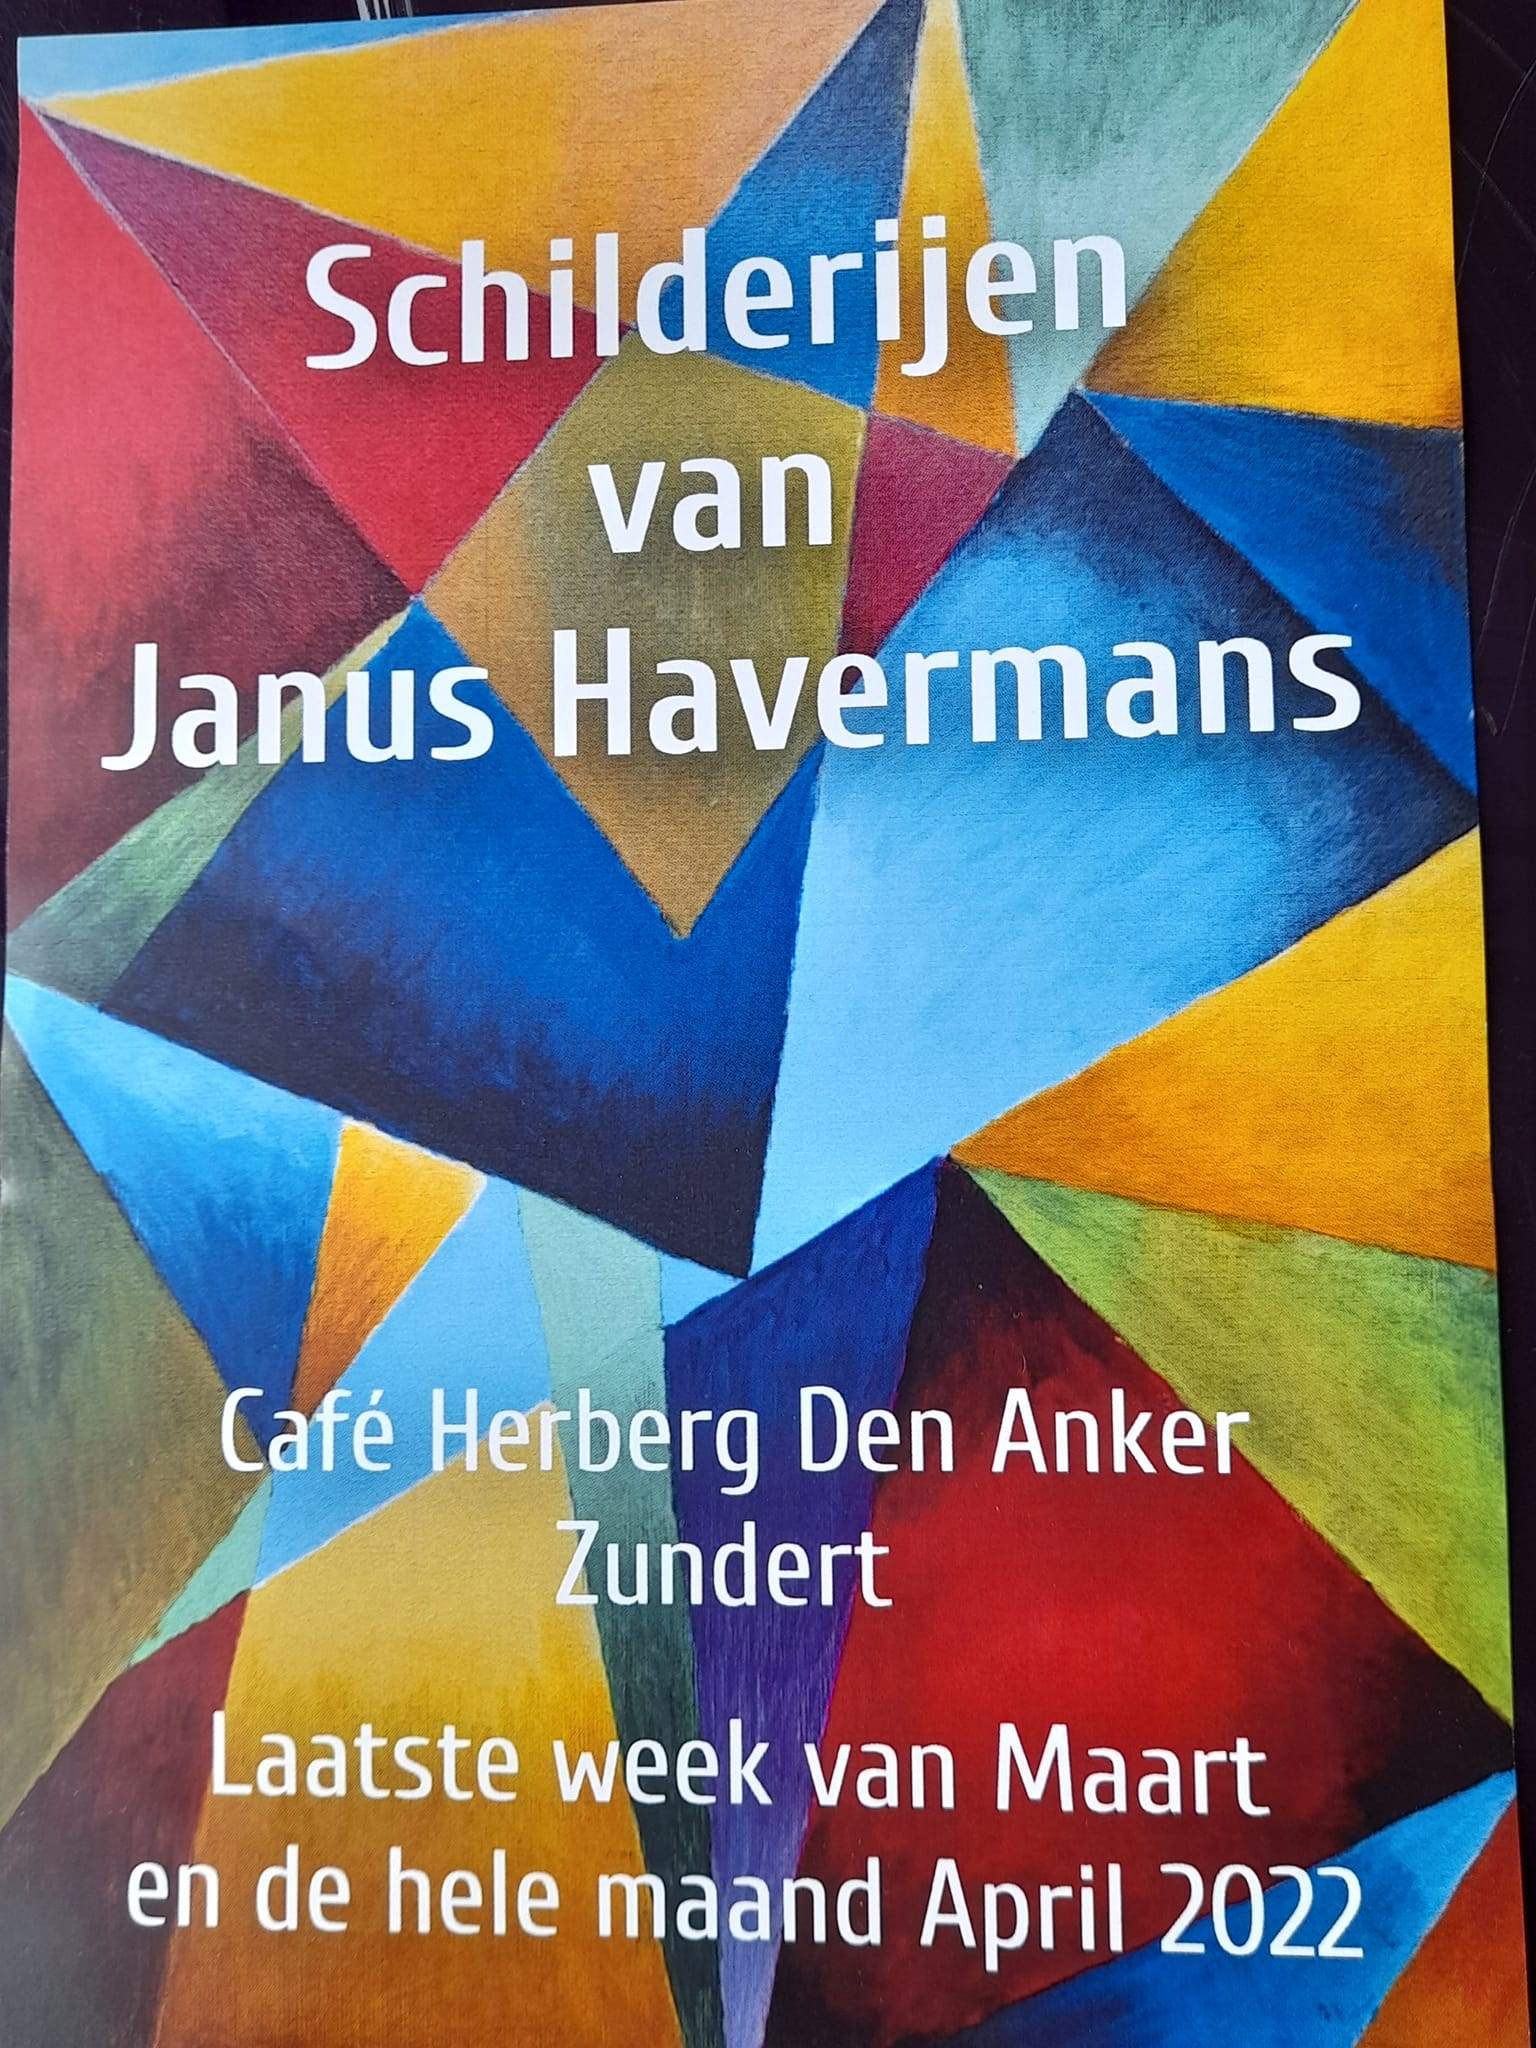 Schilderijen van Janus Havermans, bij Cafe Herberg den Anker